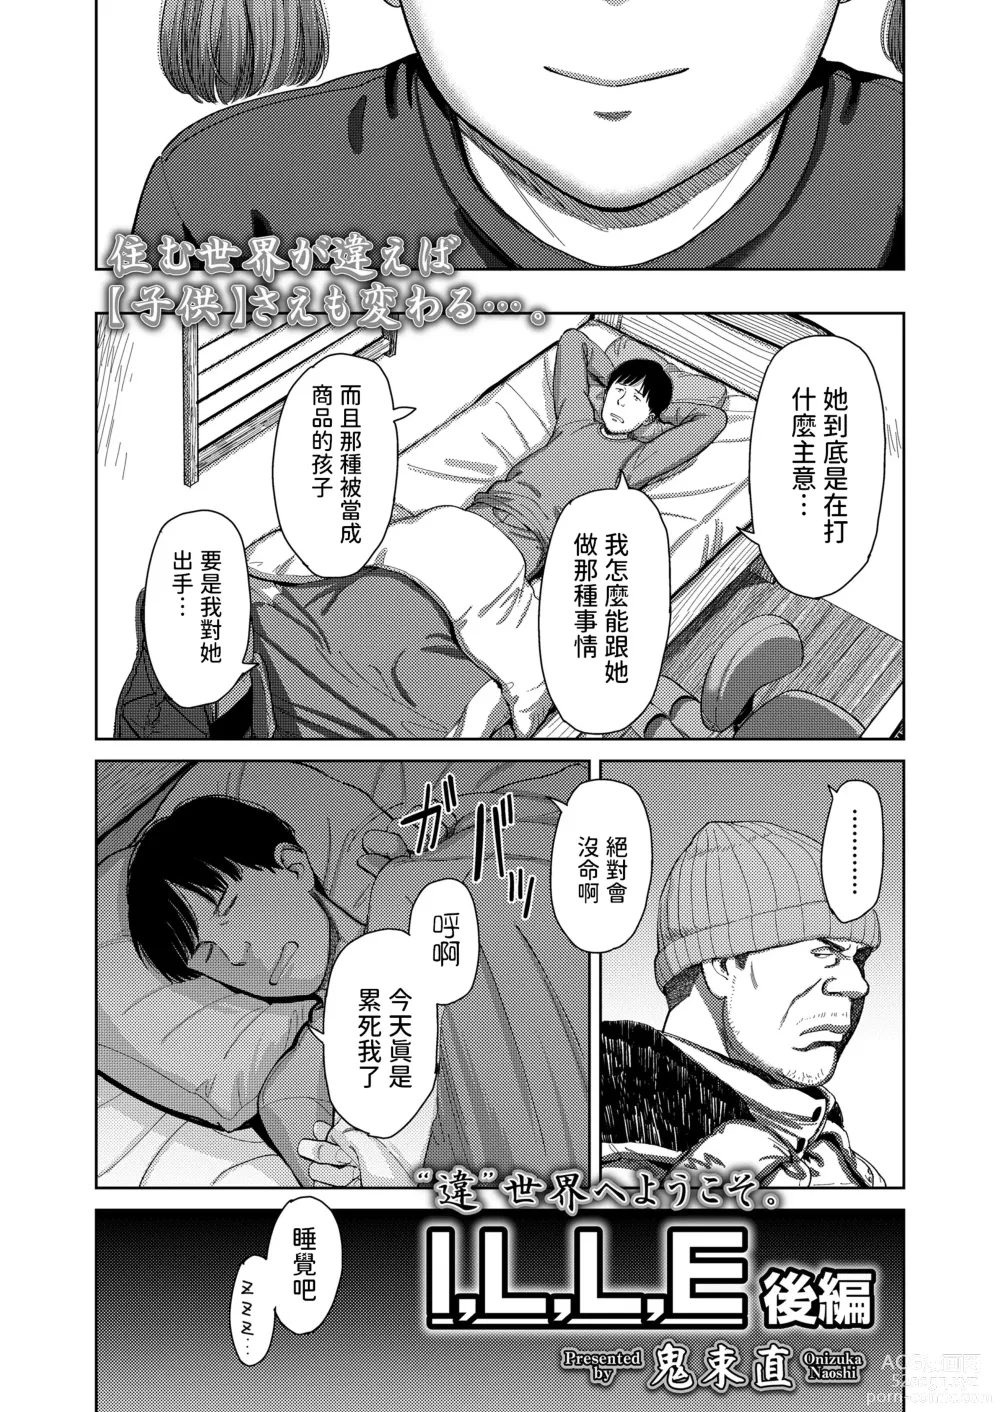 Page 3 of manga I,L,L,E Kouhen